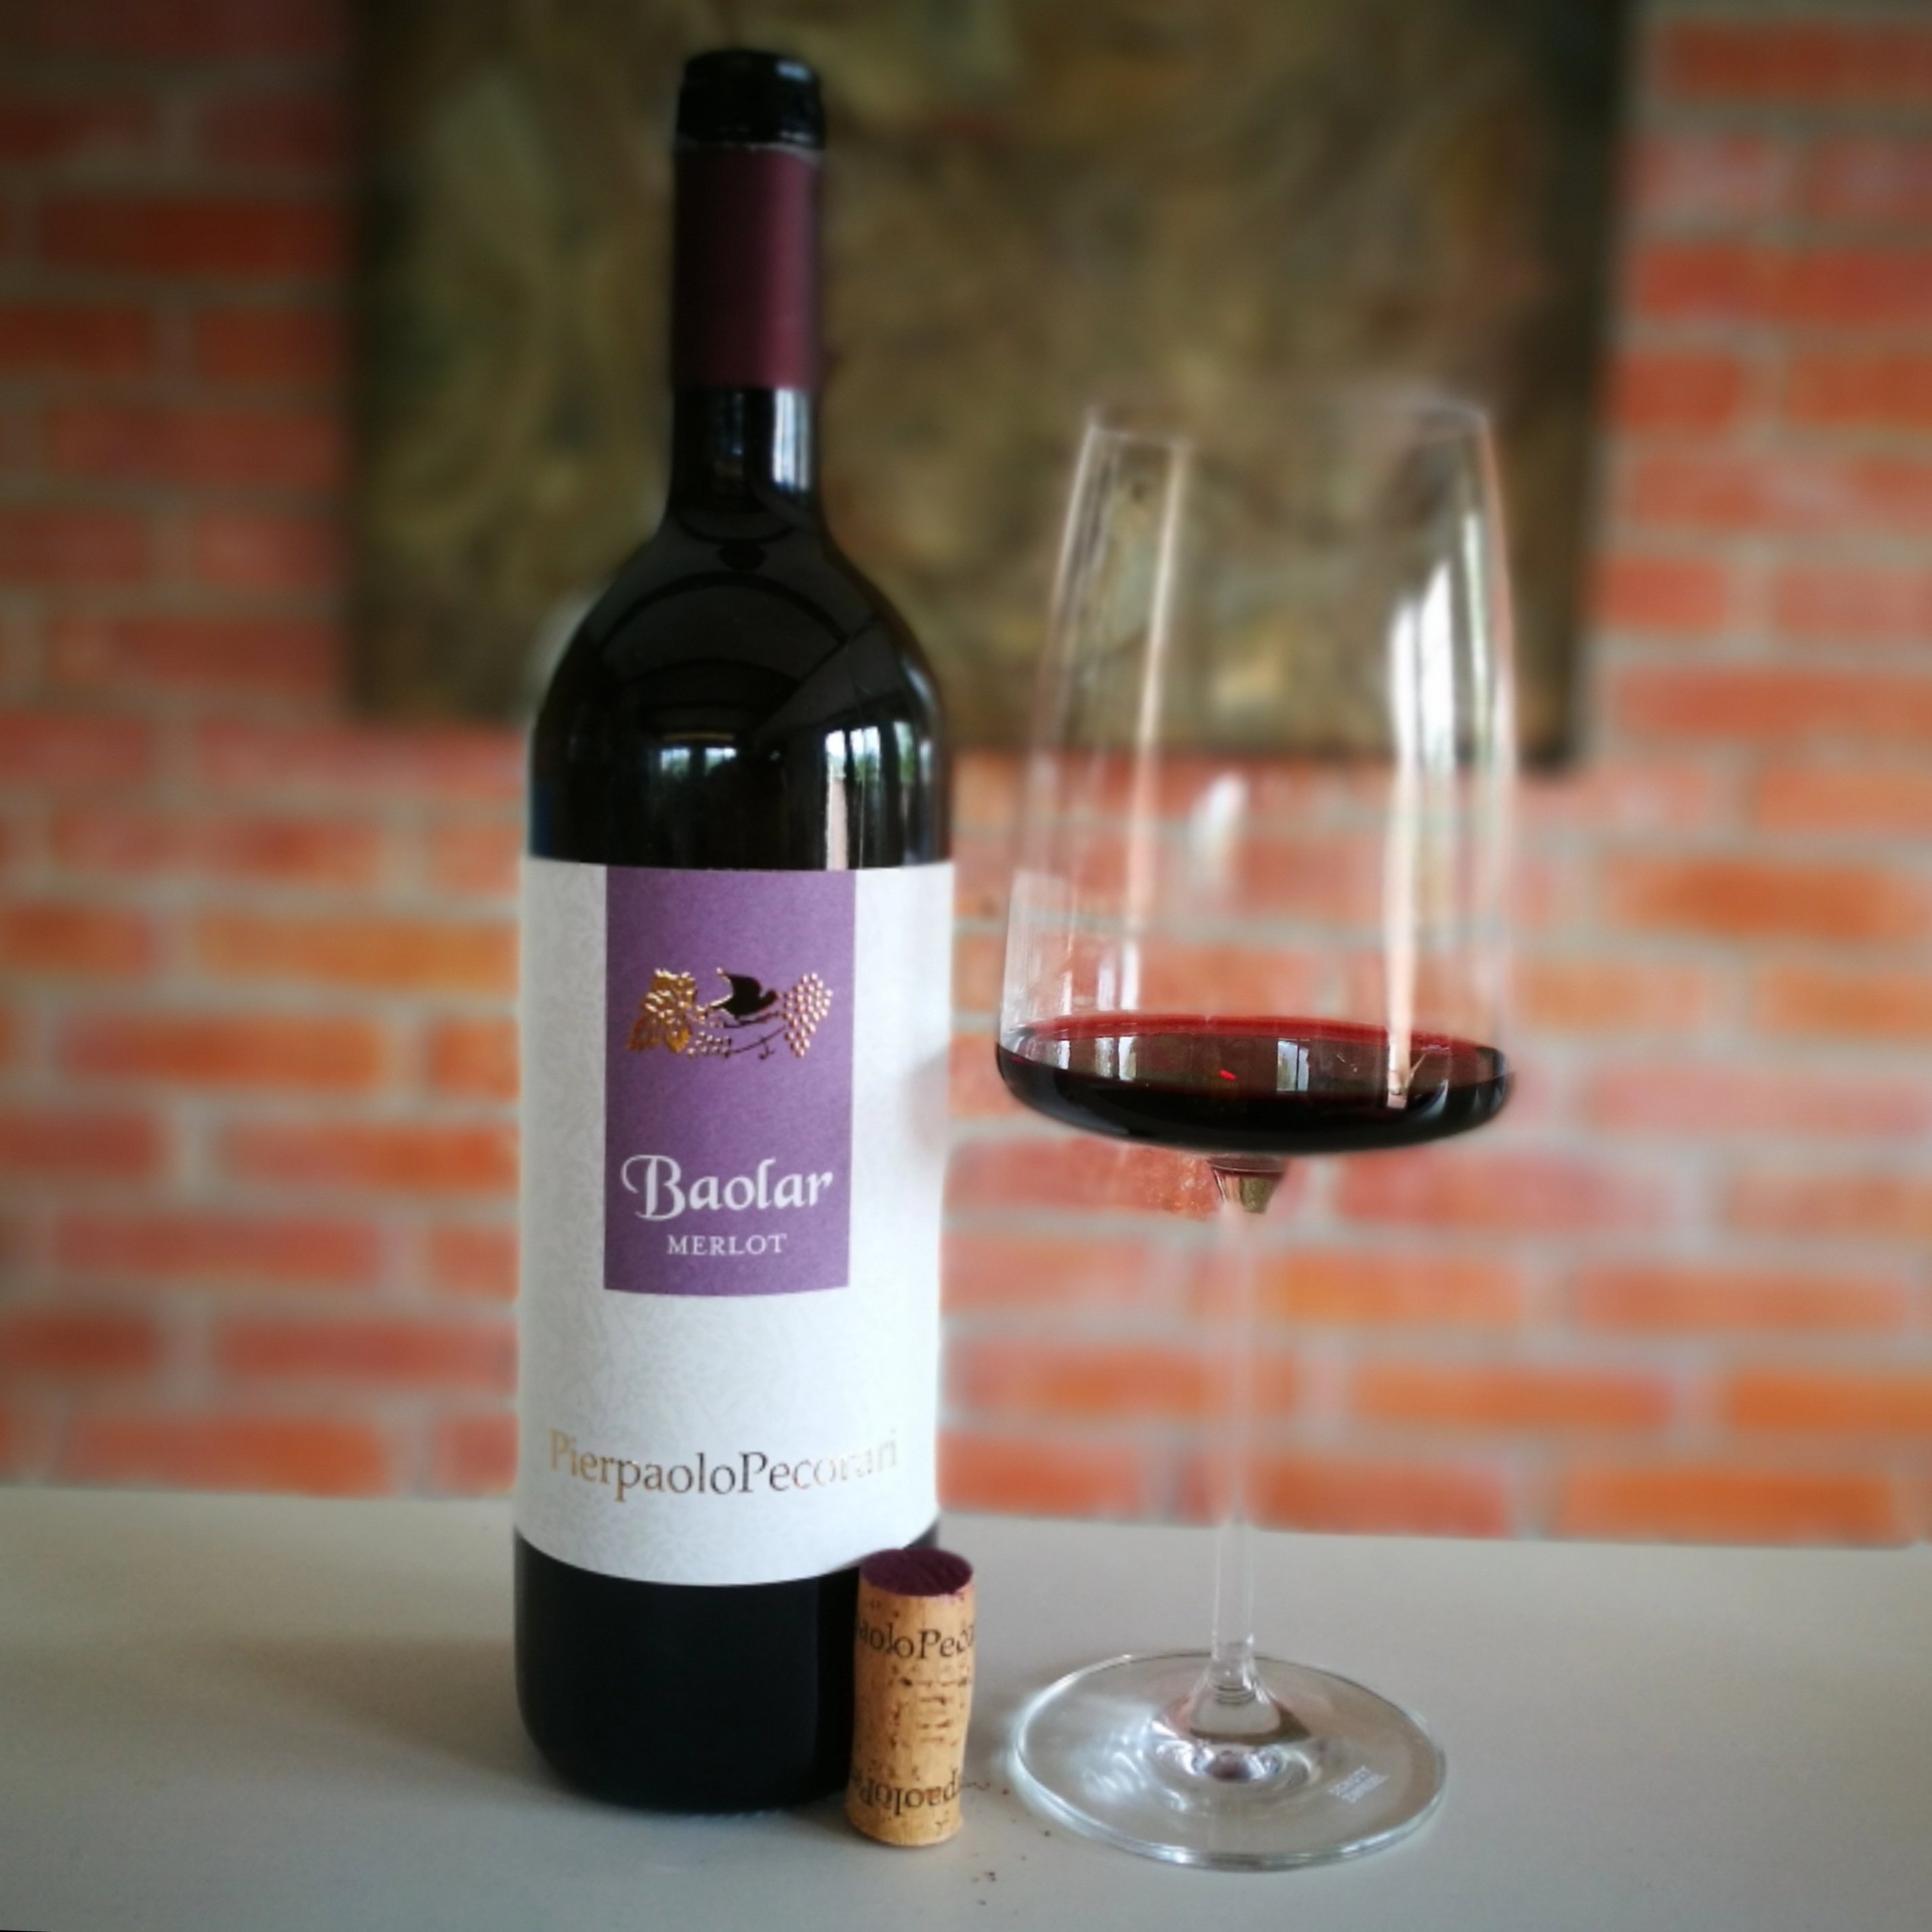 Enonauta/Degustazione di Vino #145 - review - Merlot Baolar 2016 - Pierpaolo Pecorari | Finissimo Merlot Isontino